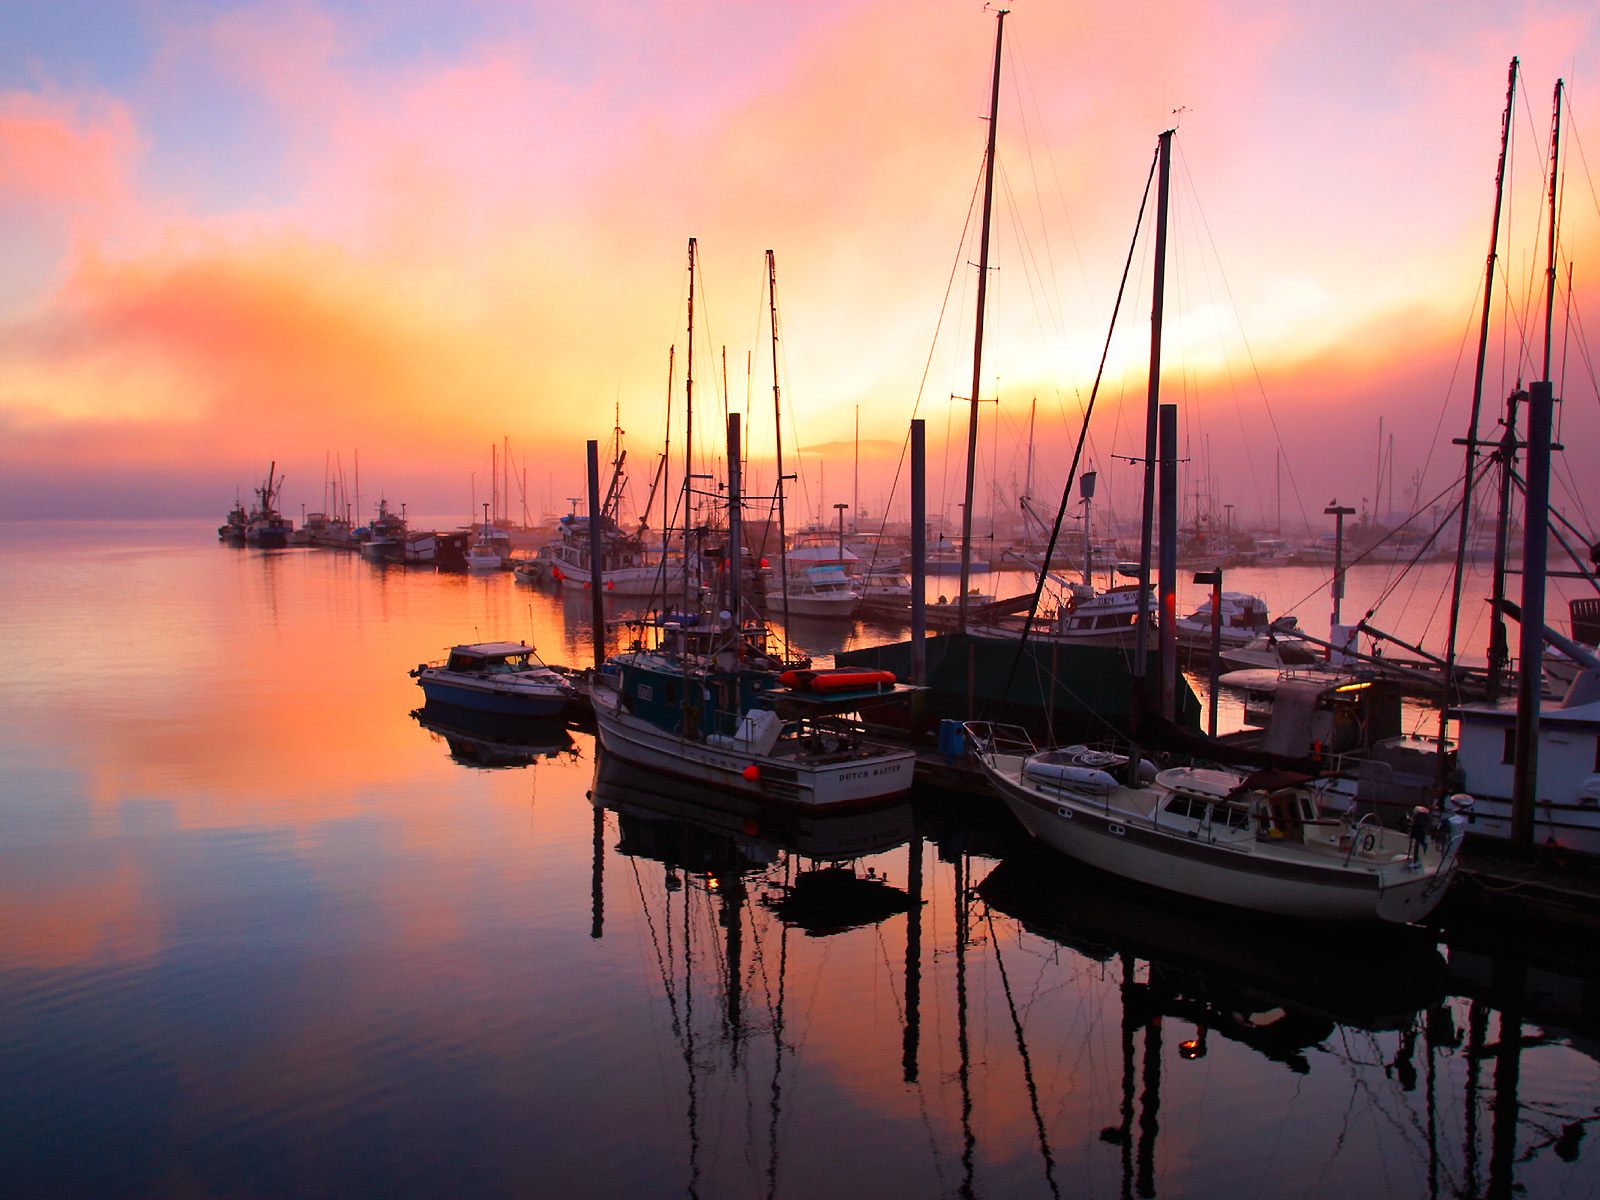 Download Background - Juneau Boat Harbor at Sunset, Alaska - Free ...